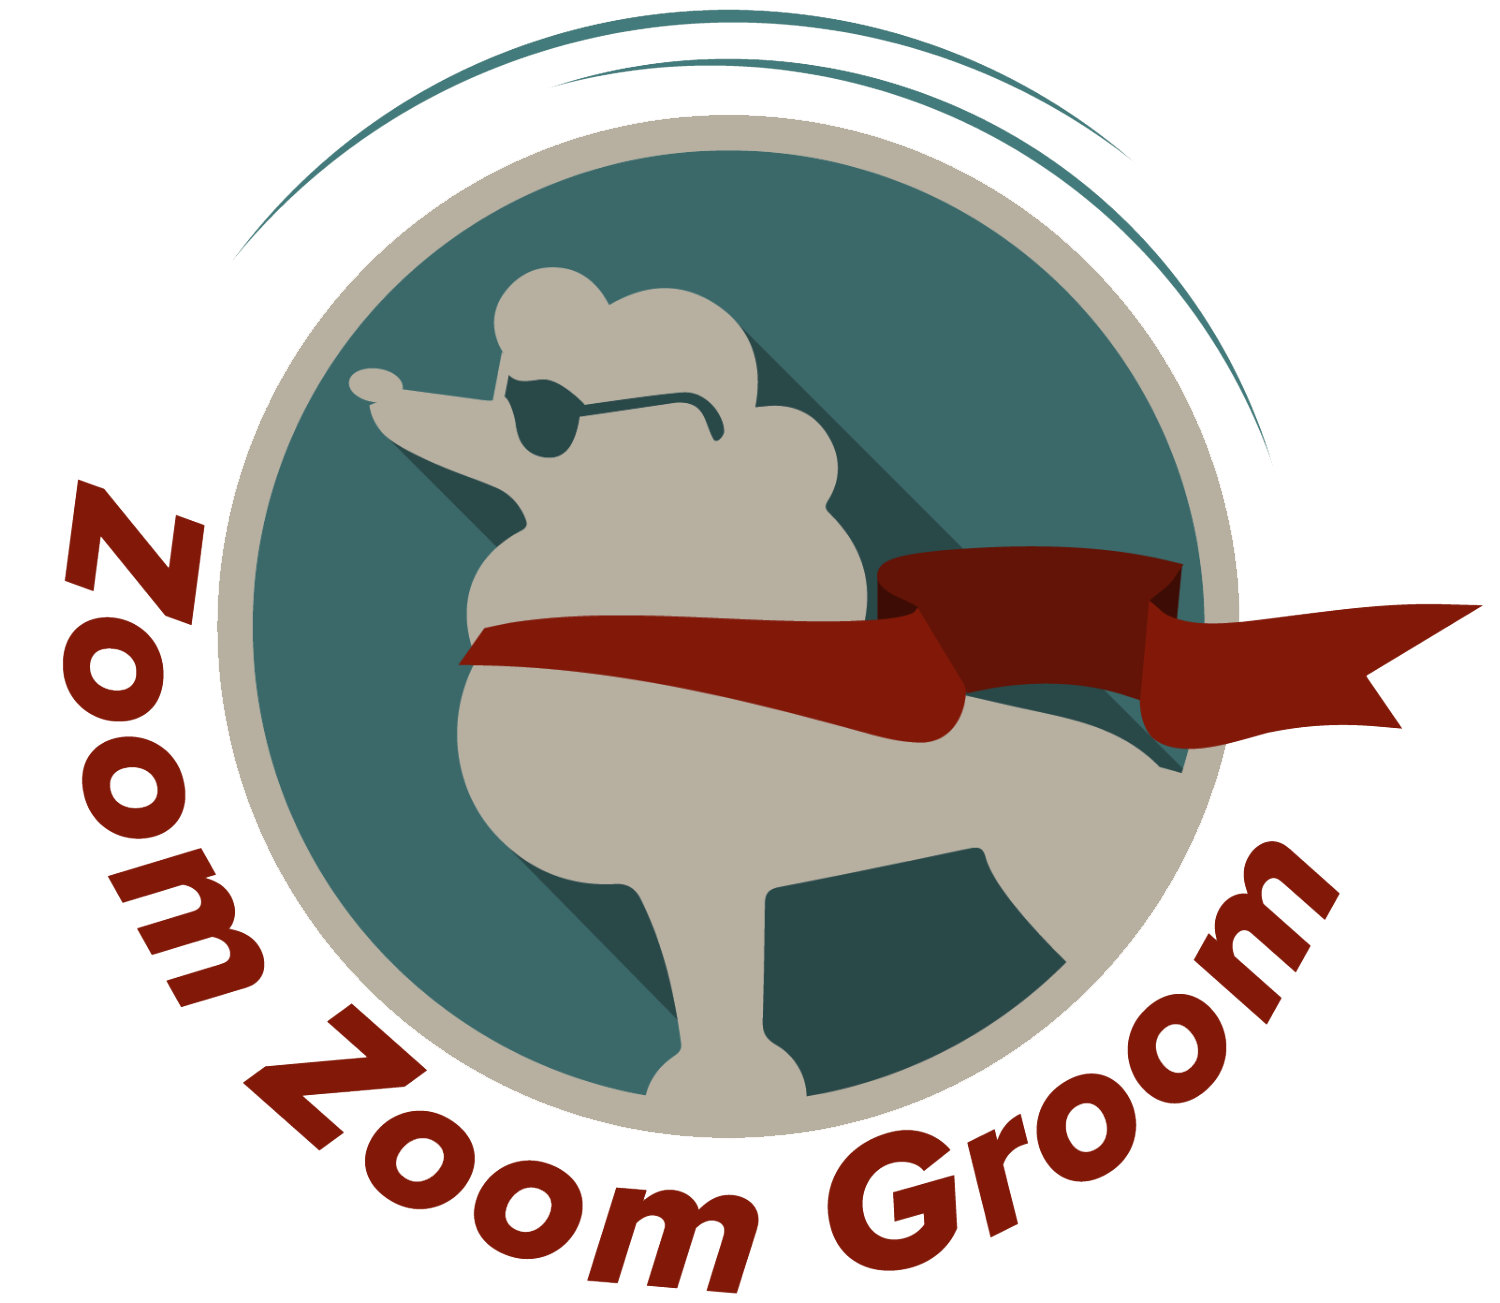 Zoom Zoom Groom